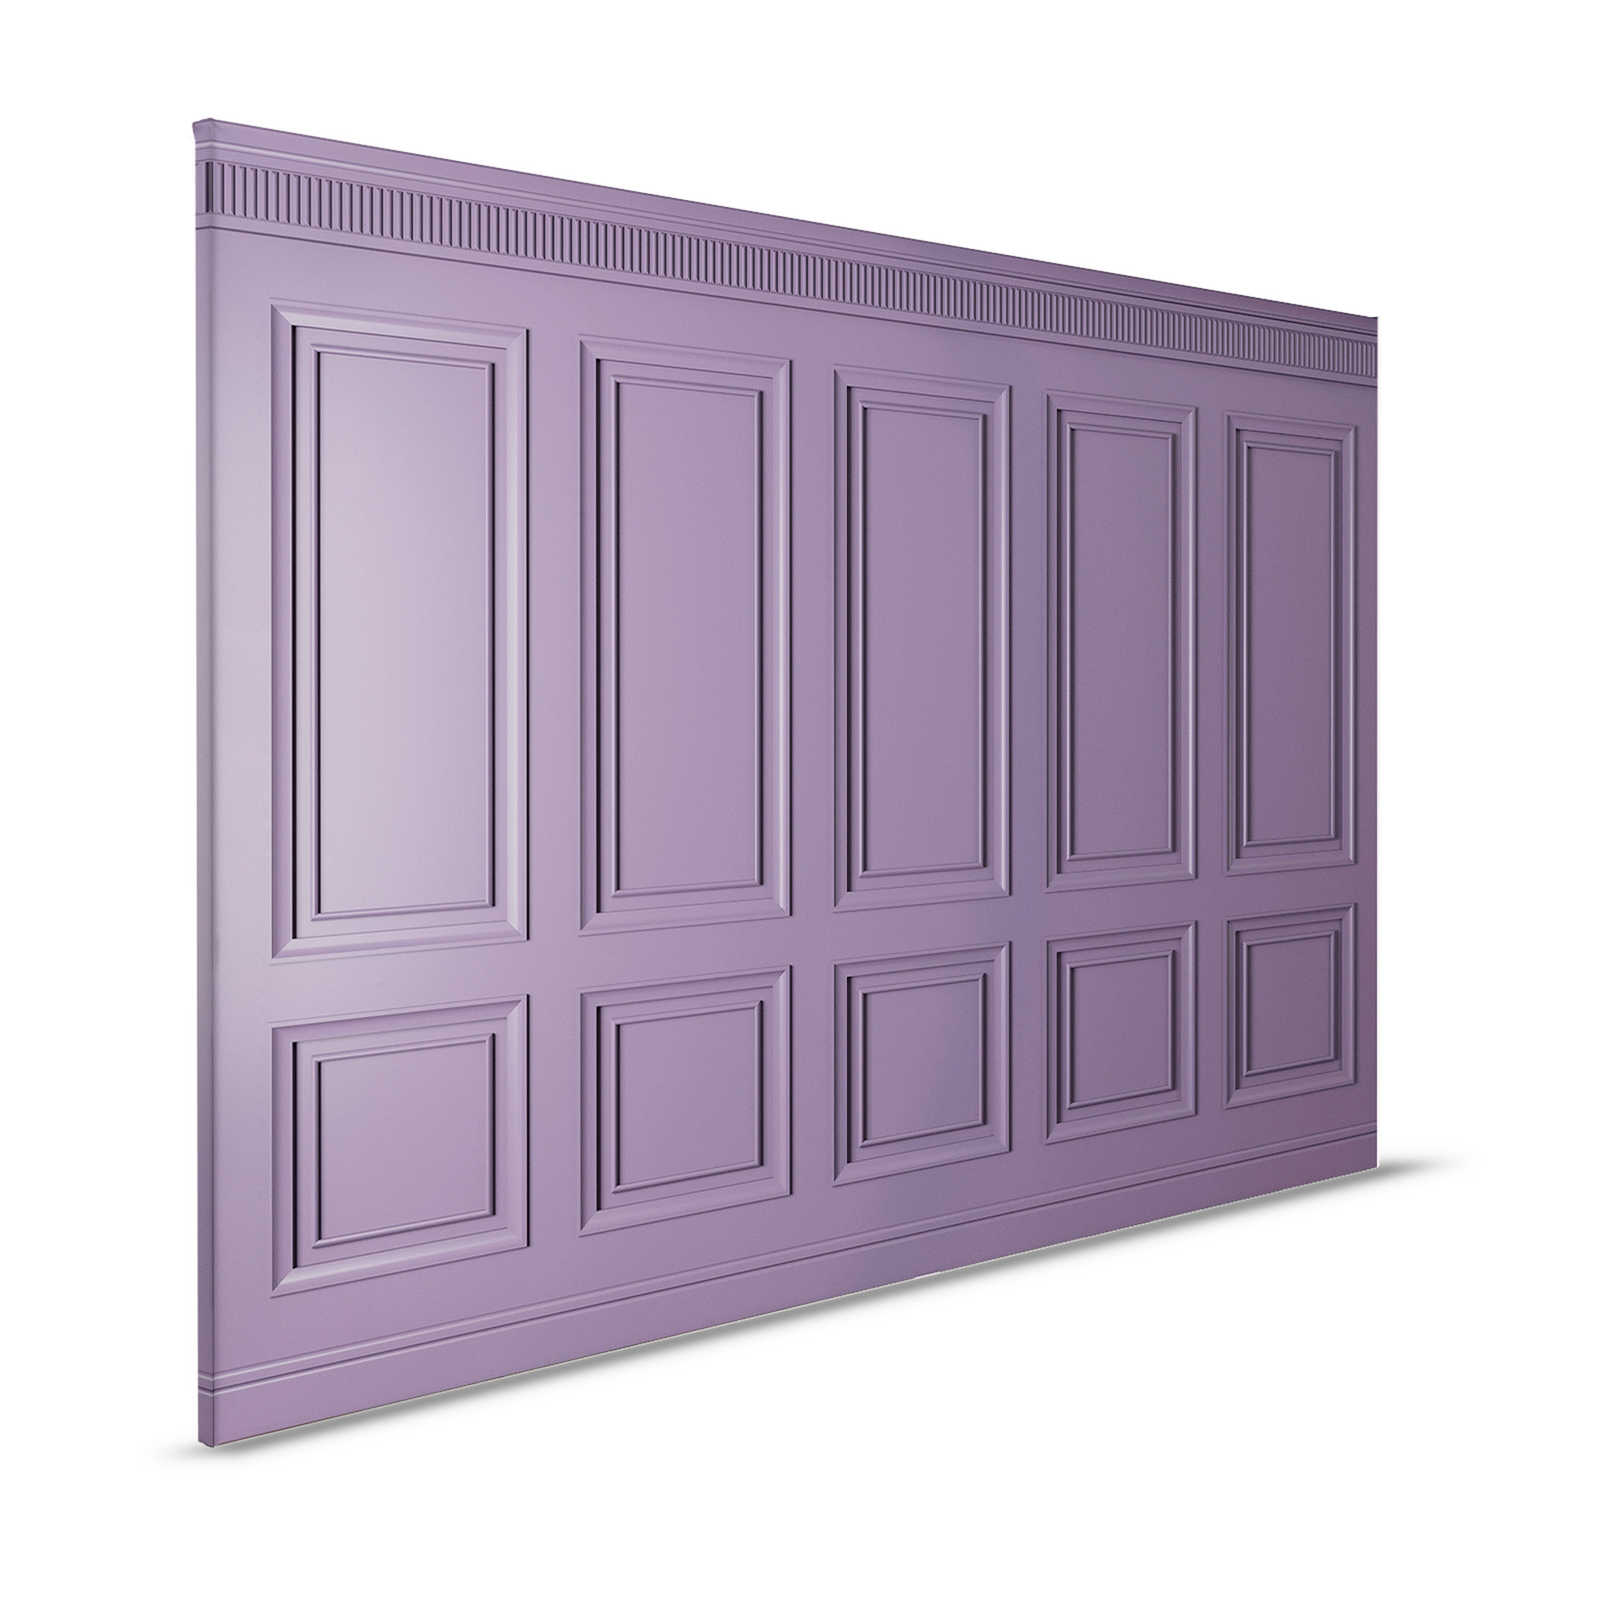 Kensington 3 - 3D Lienzo pintura paneles de madera púrpura oscuro, violeta - 1,20 m x 0,80 m
